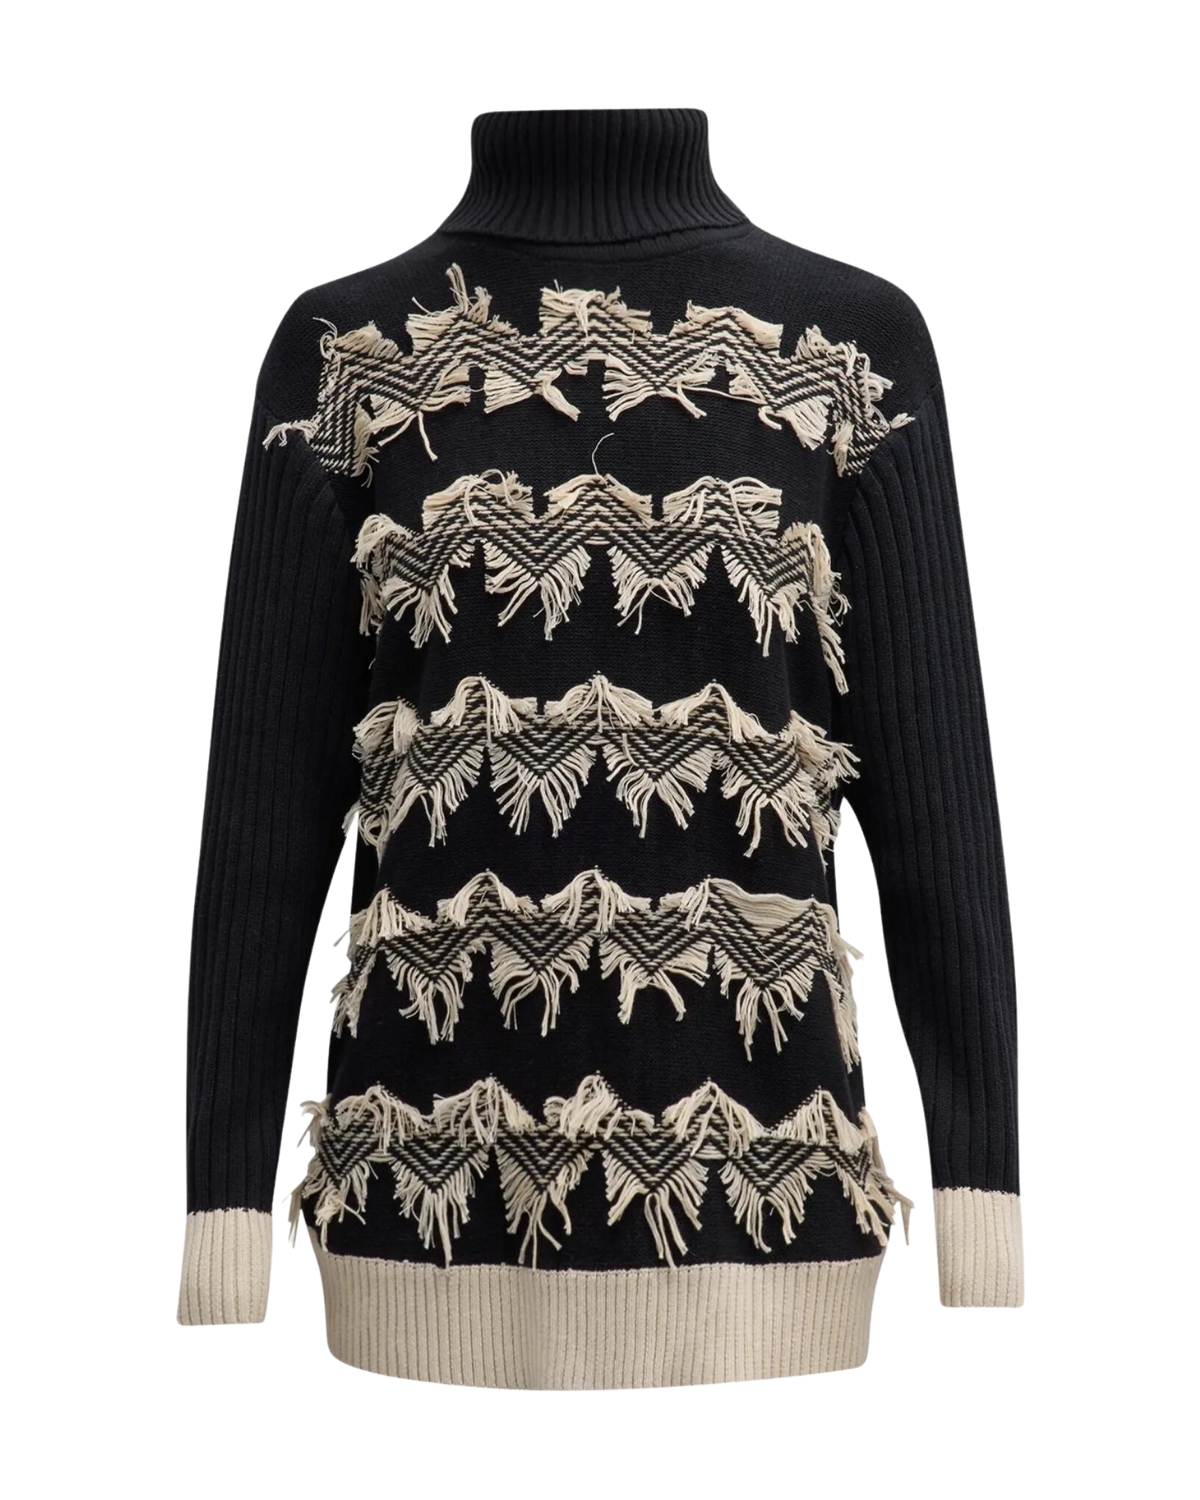 Azadeh Fringe Turtleneck Sweater (Black/Ivory)